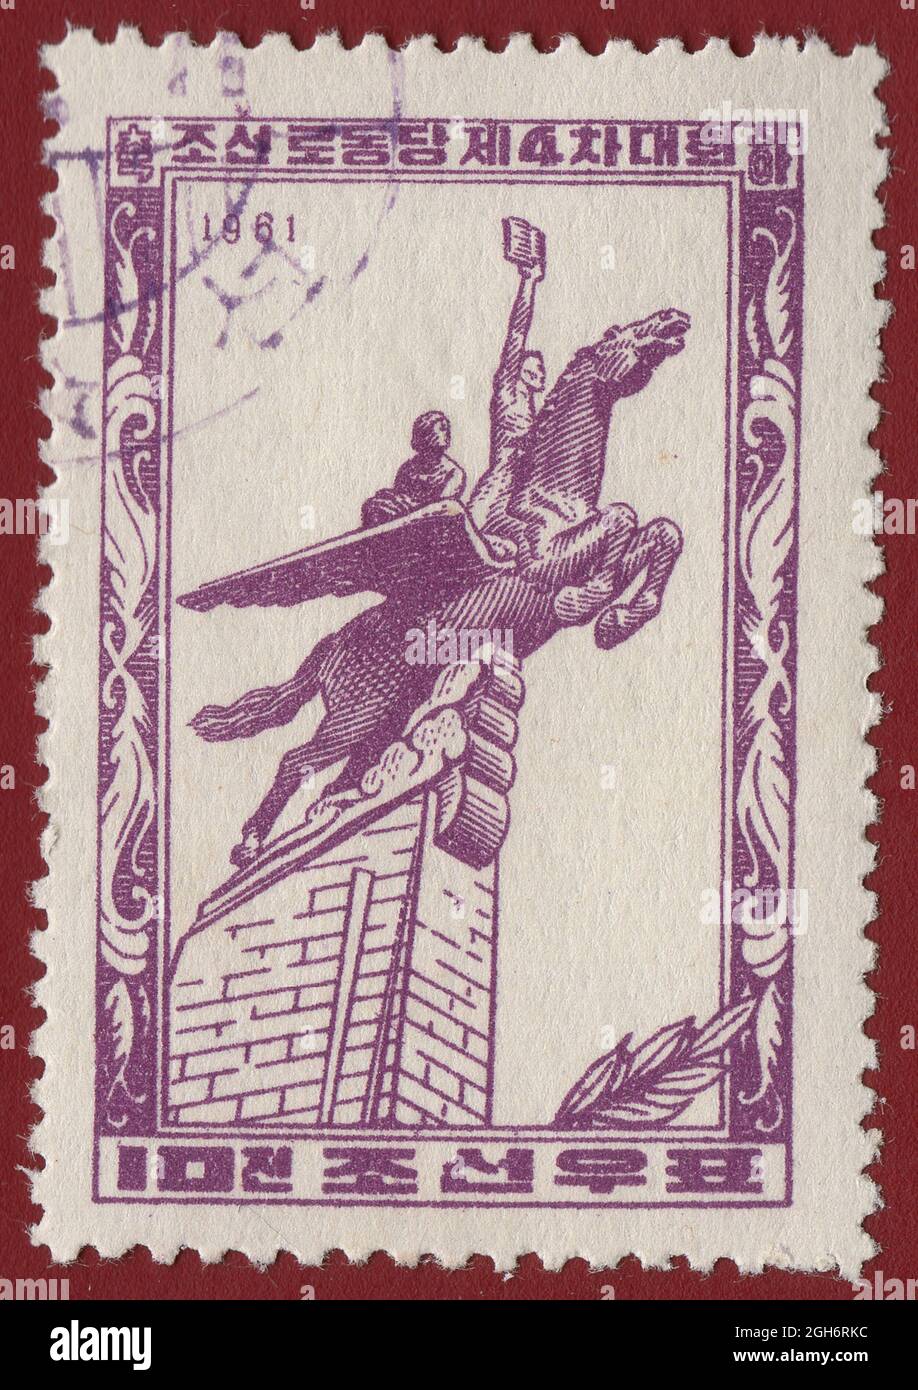 Pyongyang, Corée du Nord - VERS 1961 : un timbre imprimé en Corée du Nord montre le drapeau de la Corée du Nord, le Monument de libération. Sortie pour la quinzième Banque D'Images